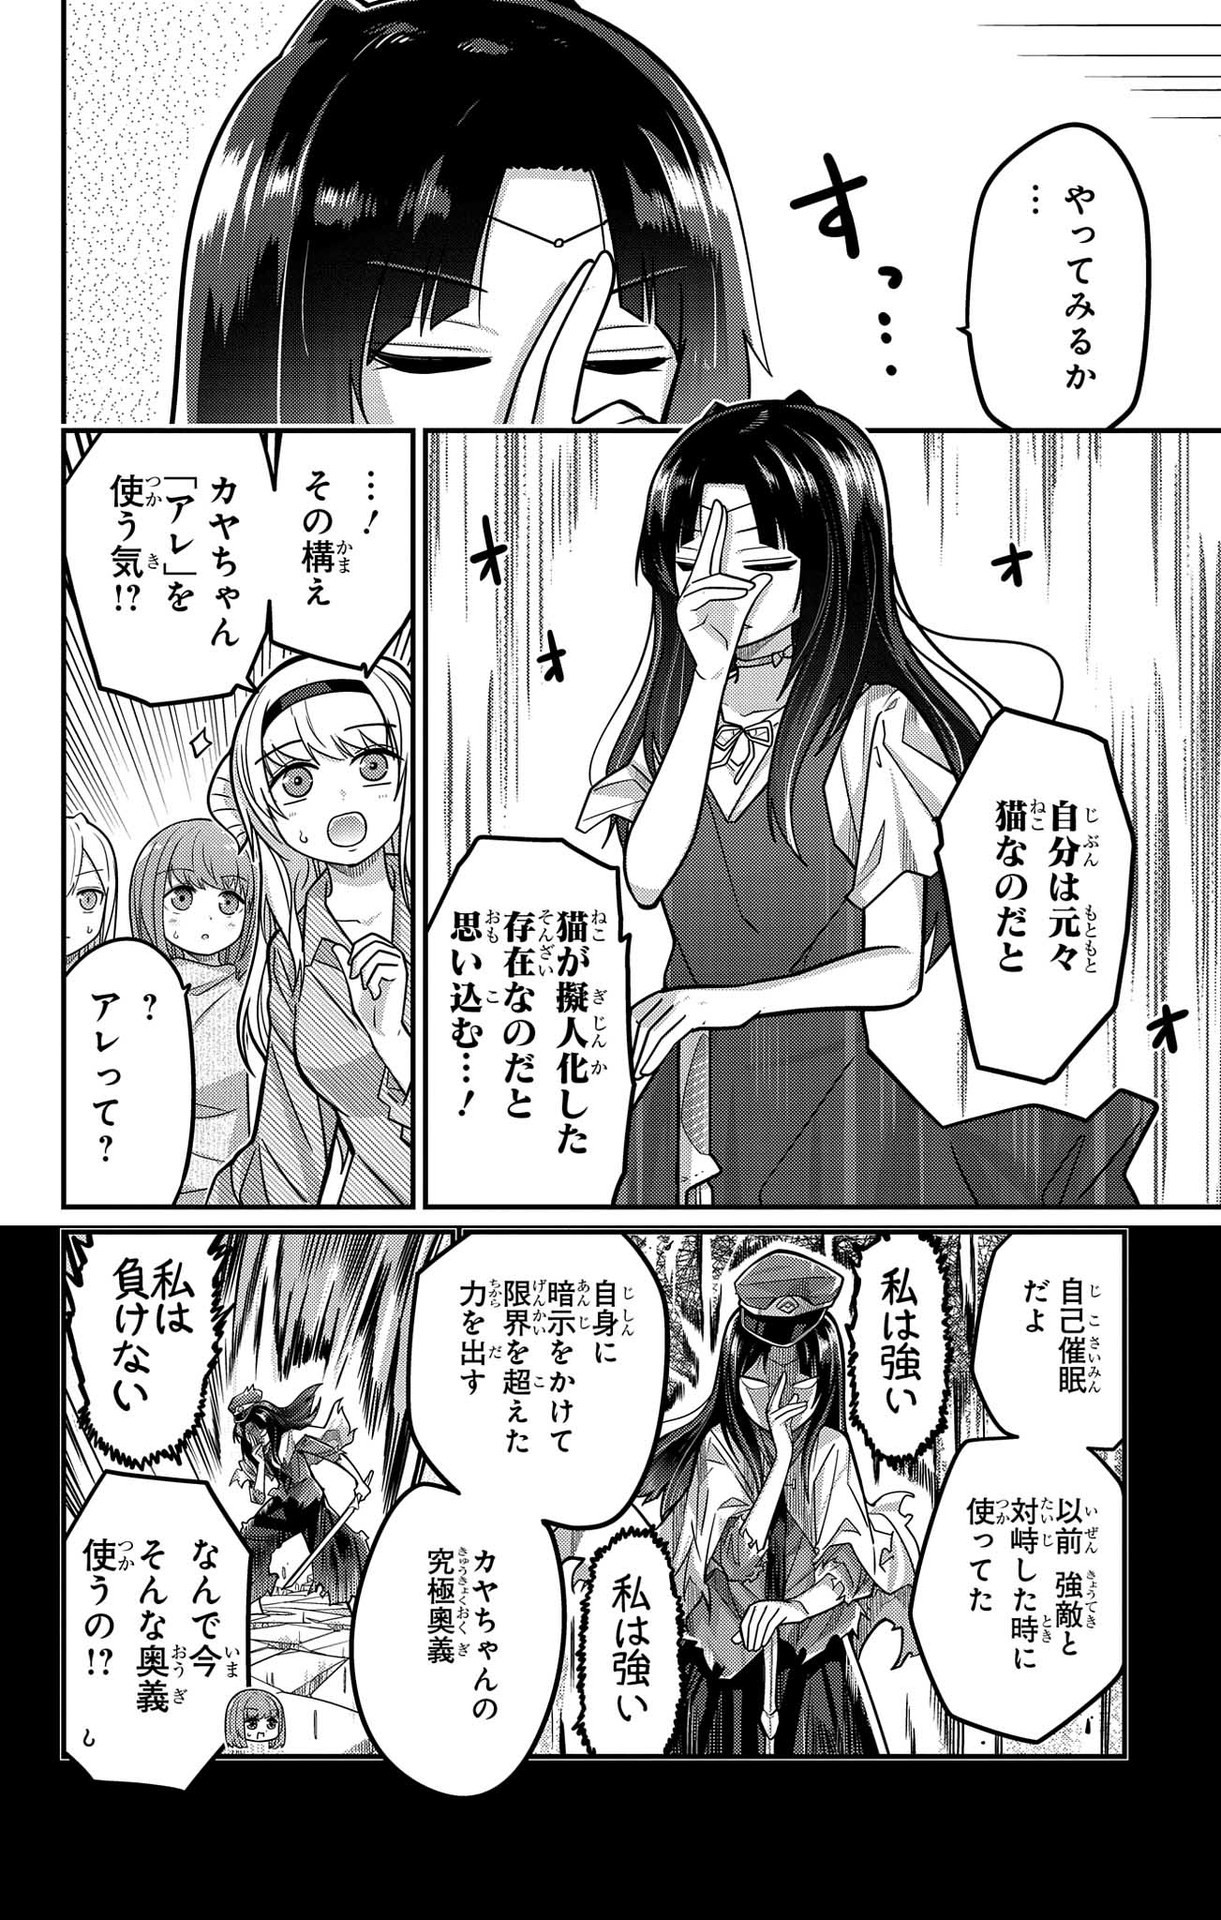 Kawaisugi Crisis - Chapter 96 - Page 6